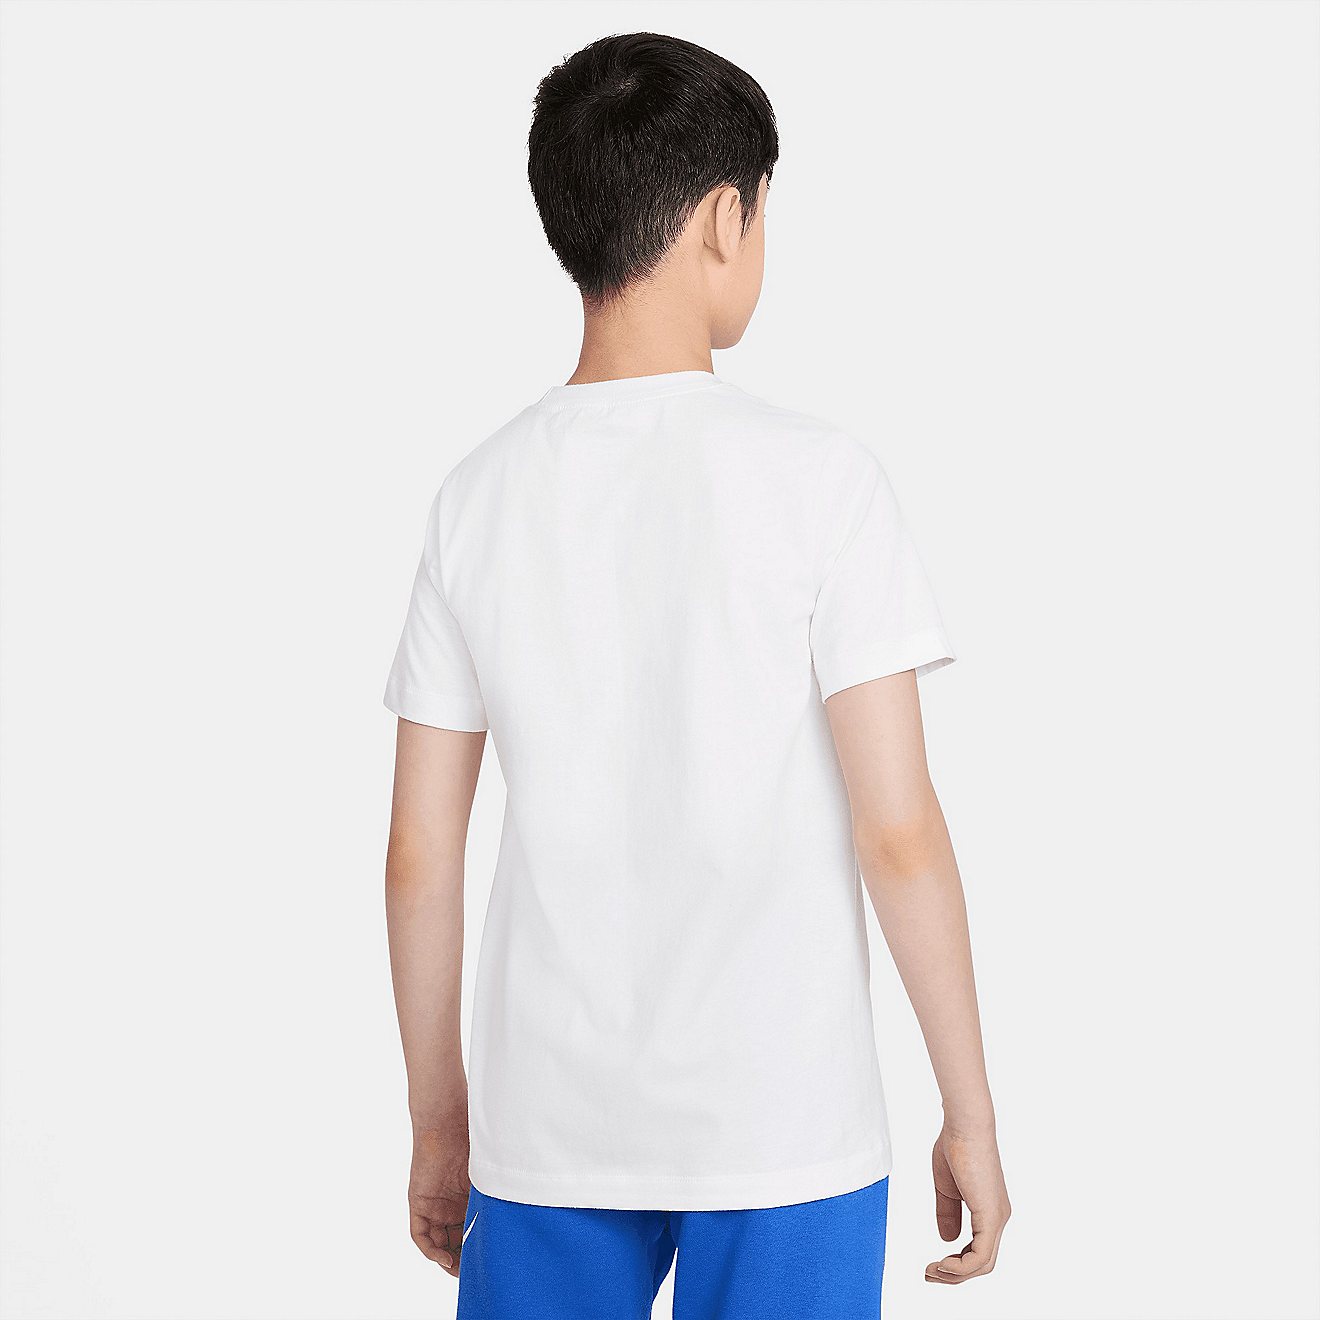 Nike Boys' Core Brandmark Graphic Training T-shirt                                                                               - view number 2